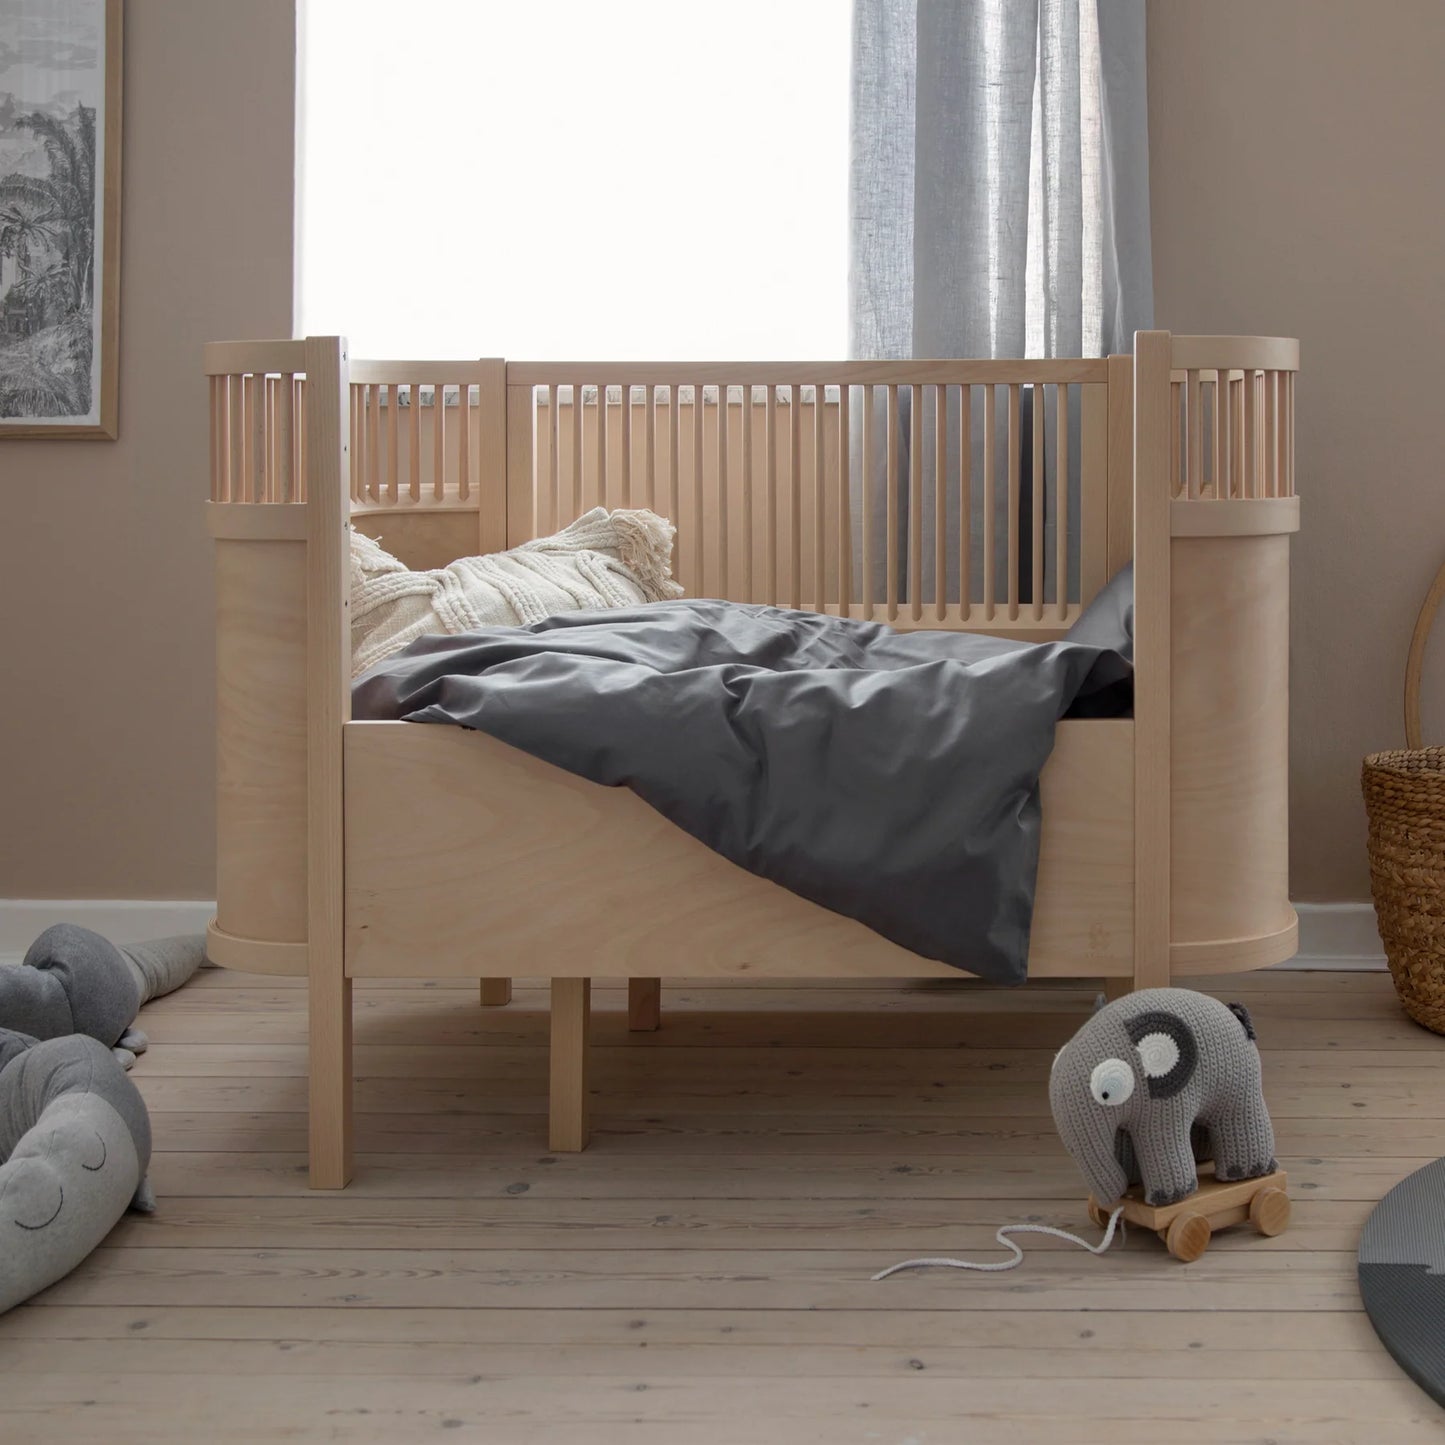 Zebra, Cot&amp;Junior bed 2in1, Wooden